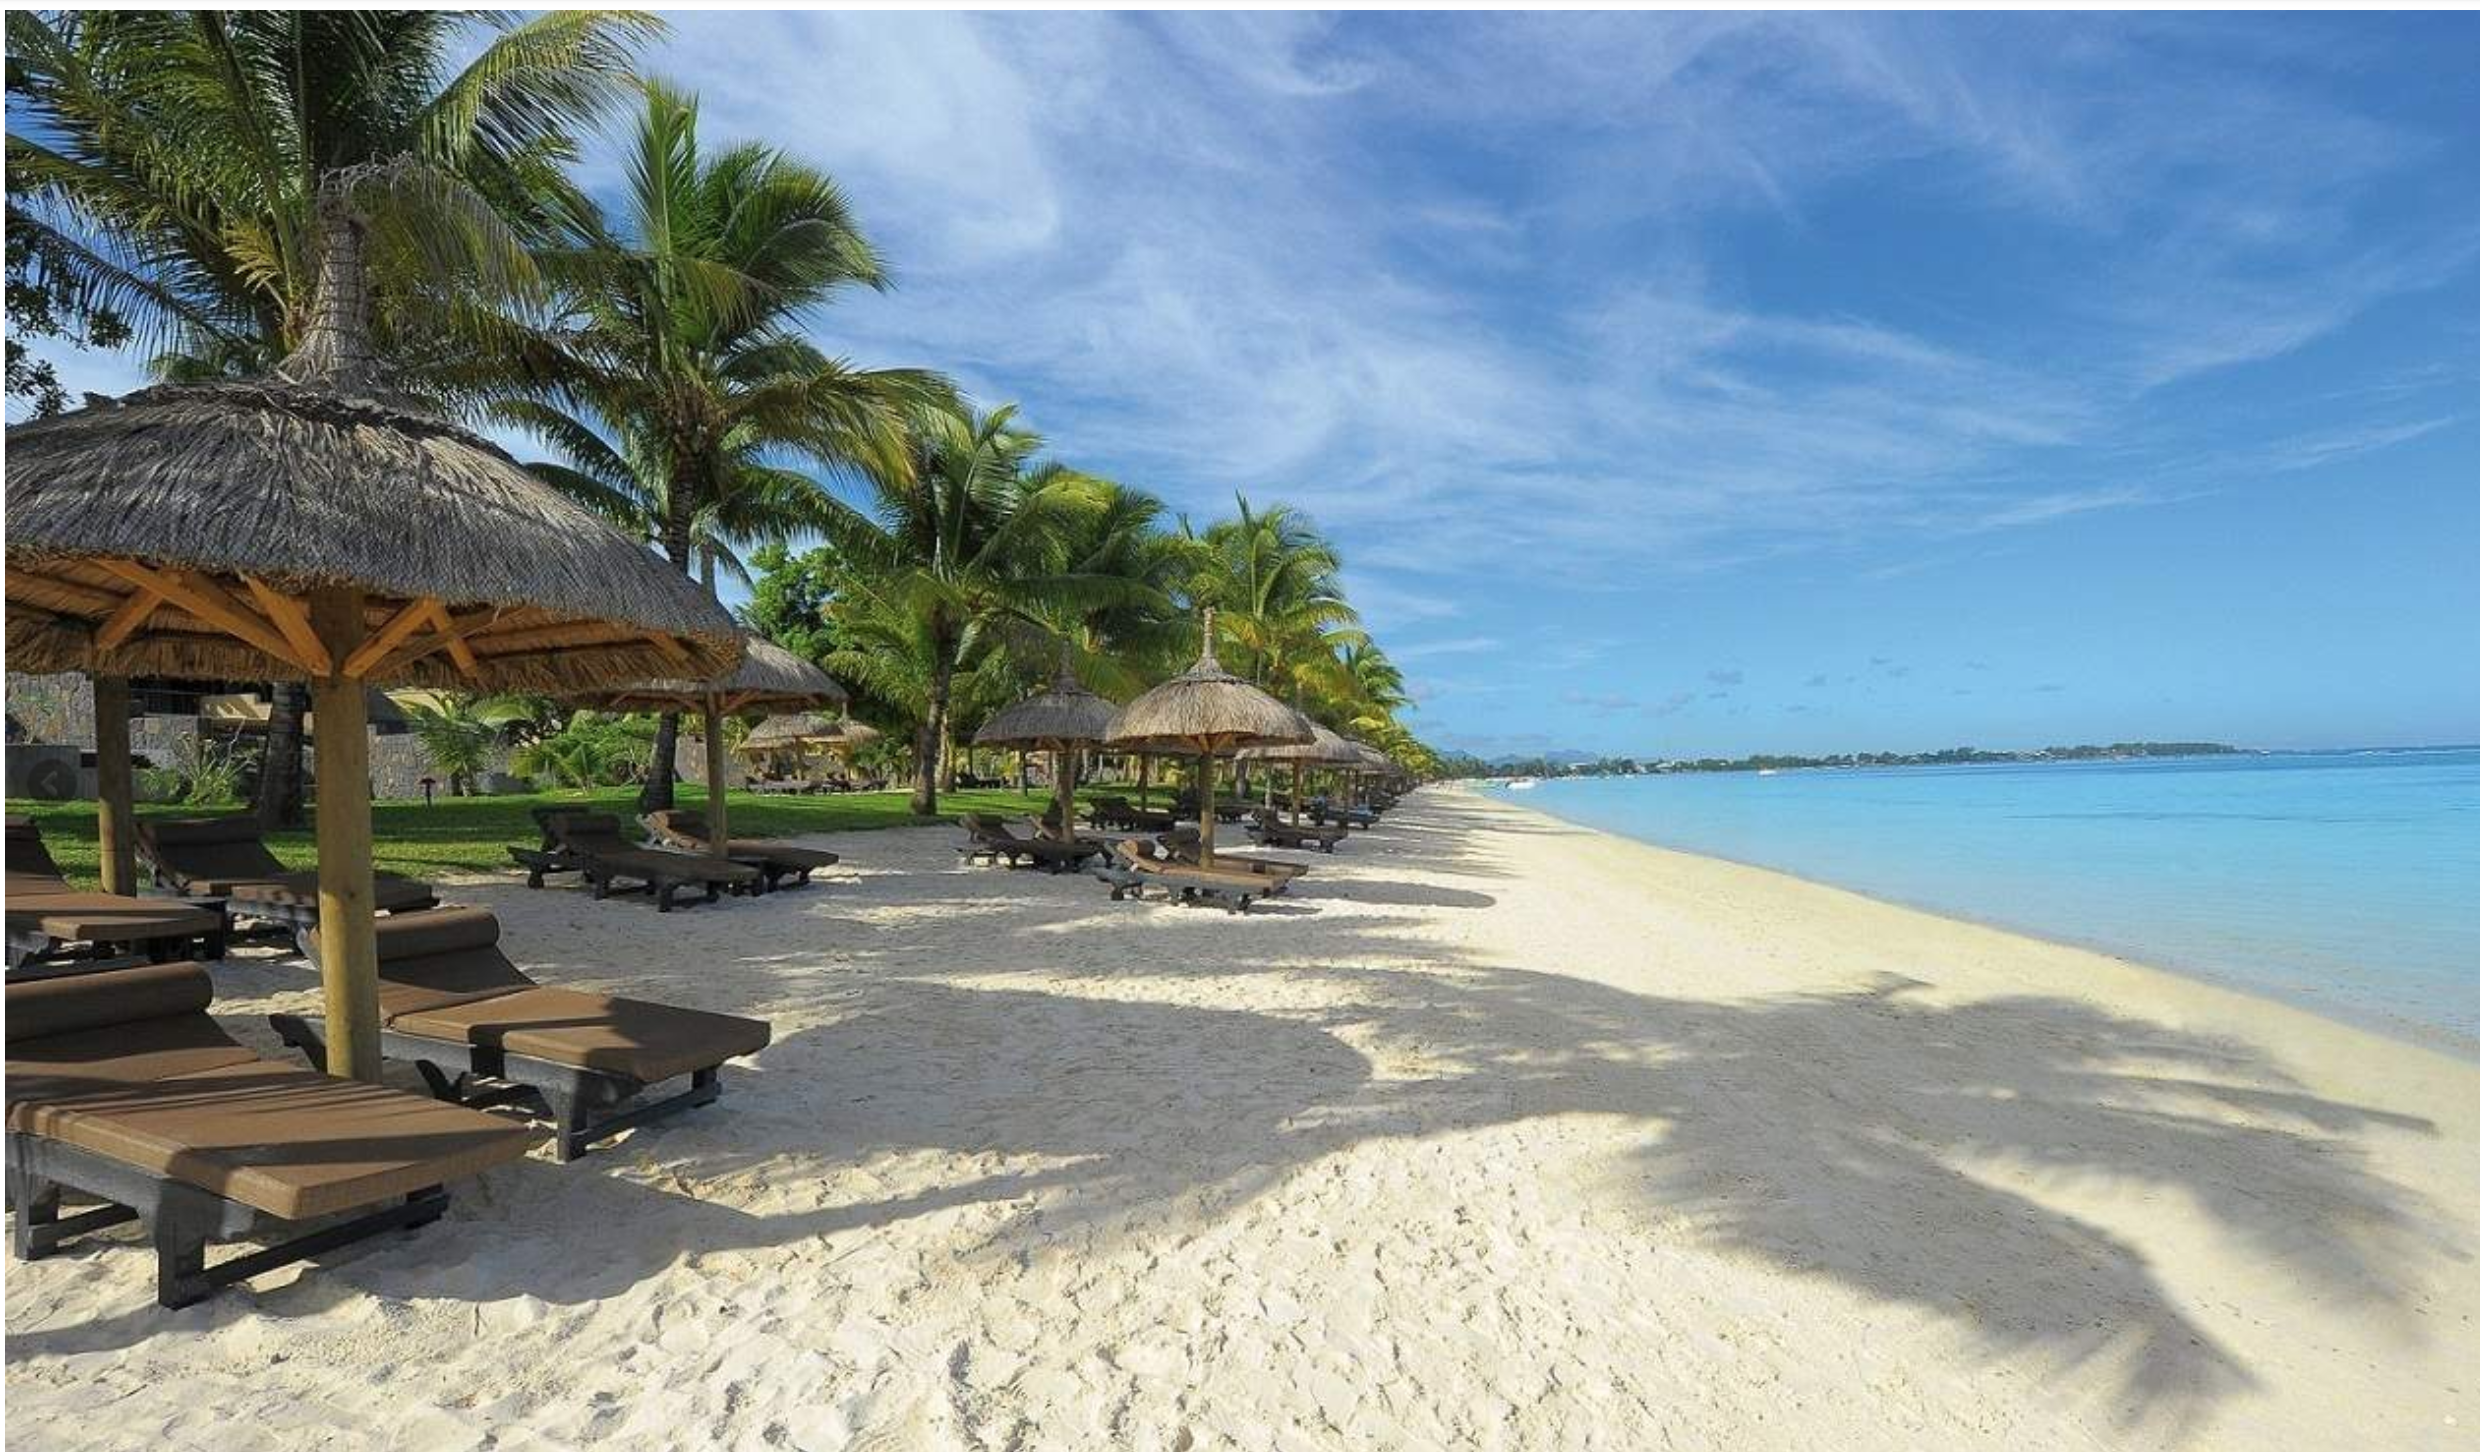 Swimming beaches in Mauritius